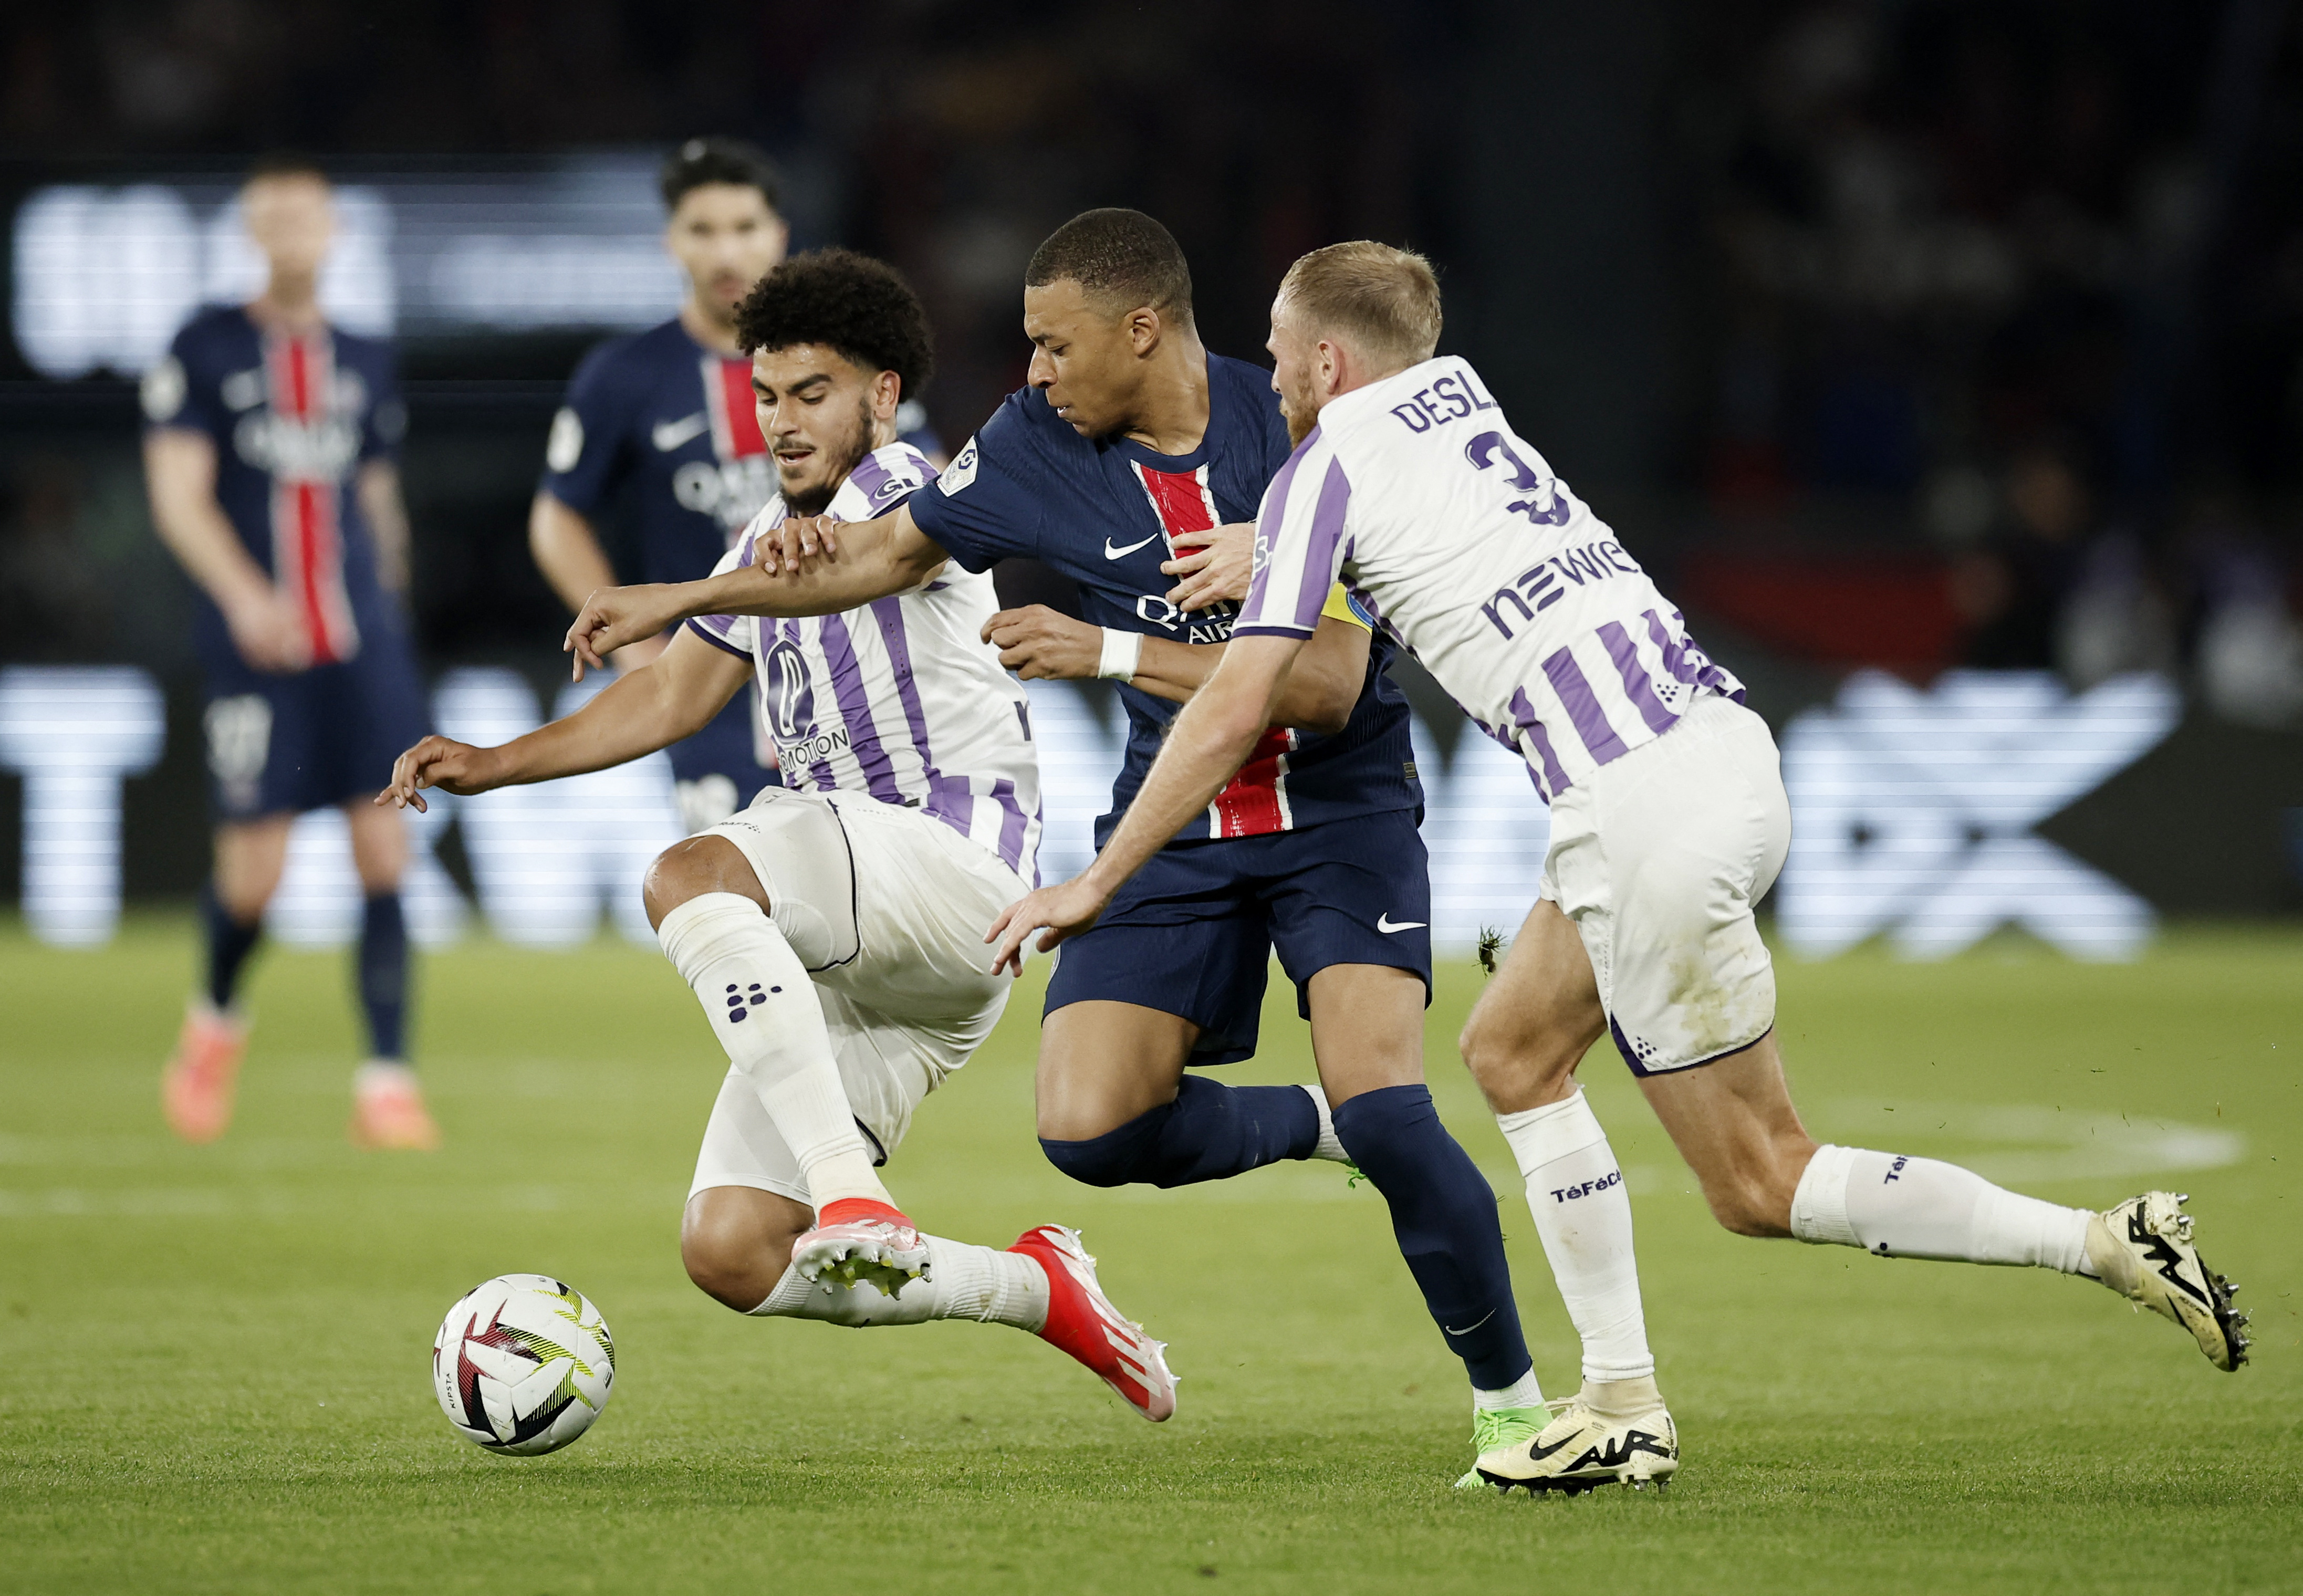 Ligue 1 - Paris St Germain v Toulouse